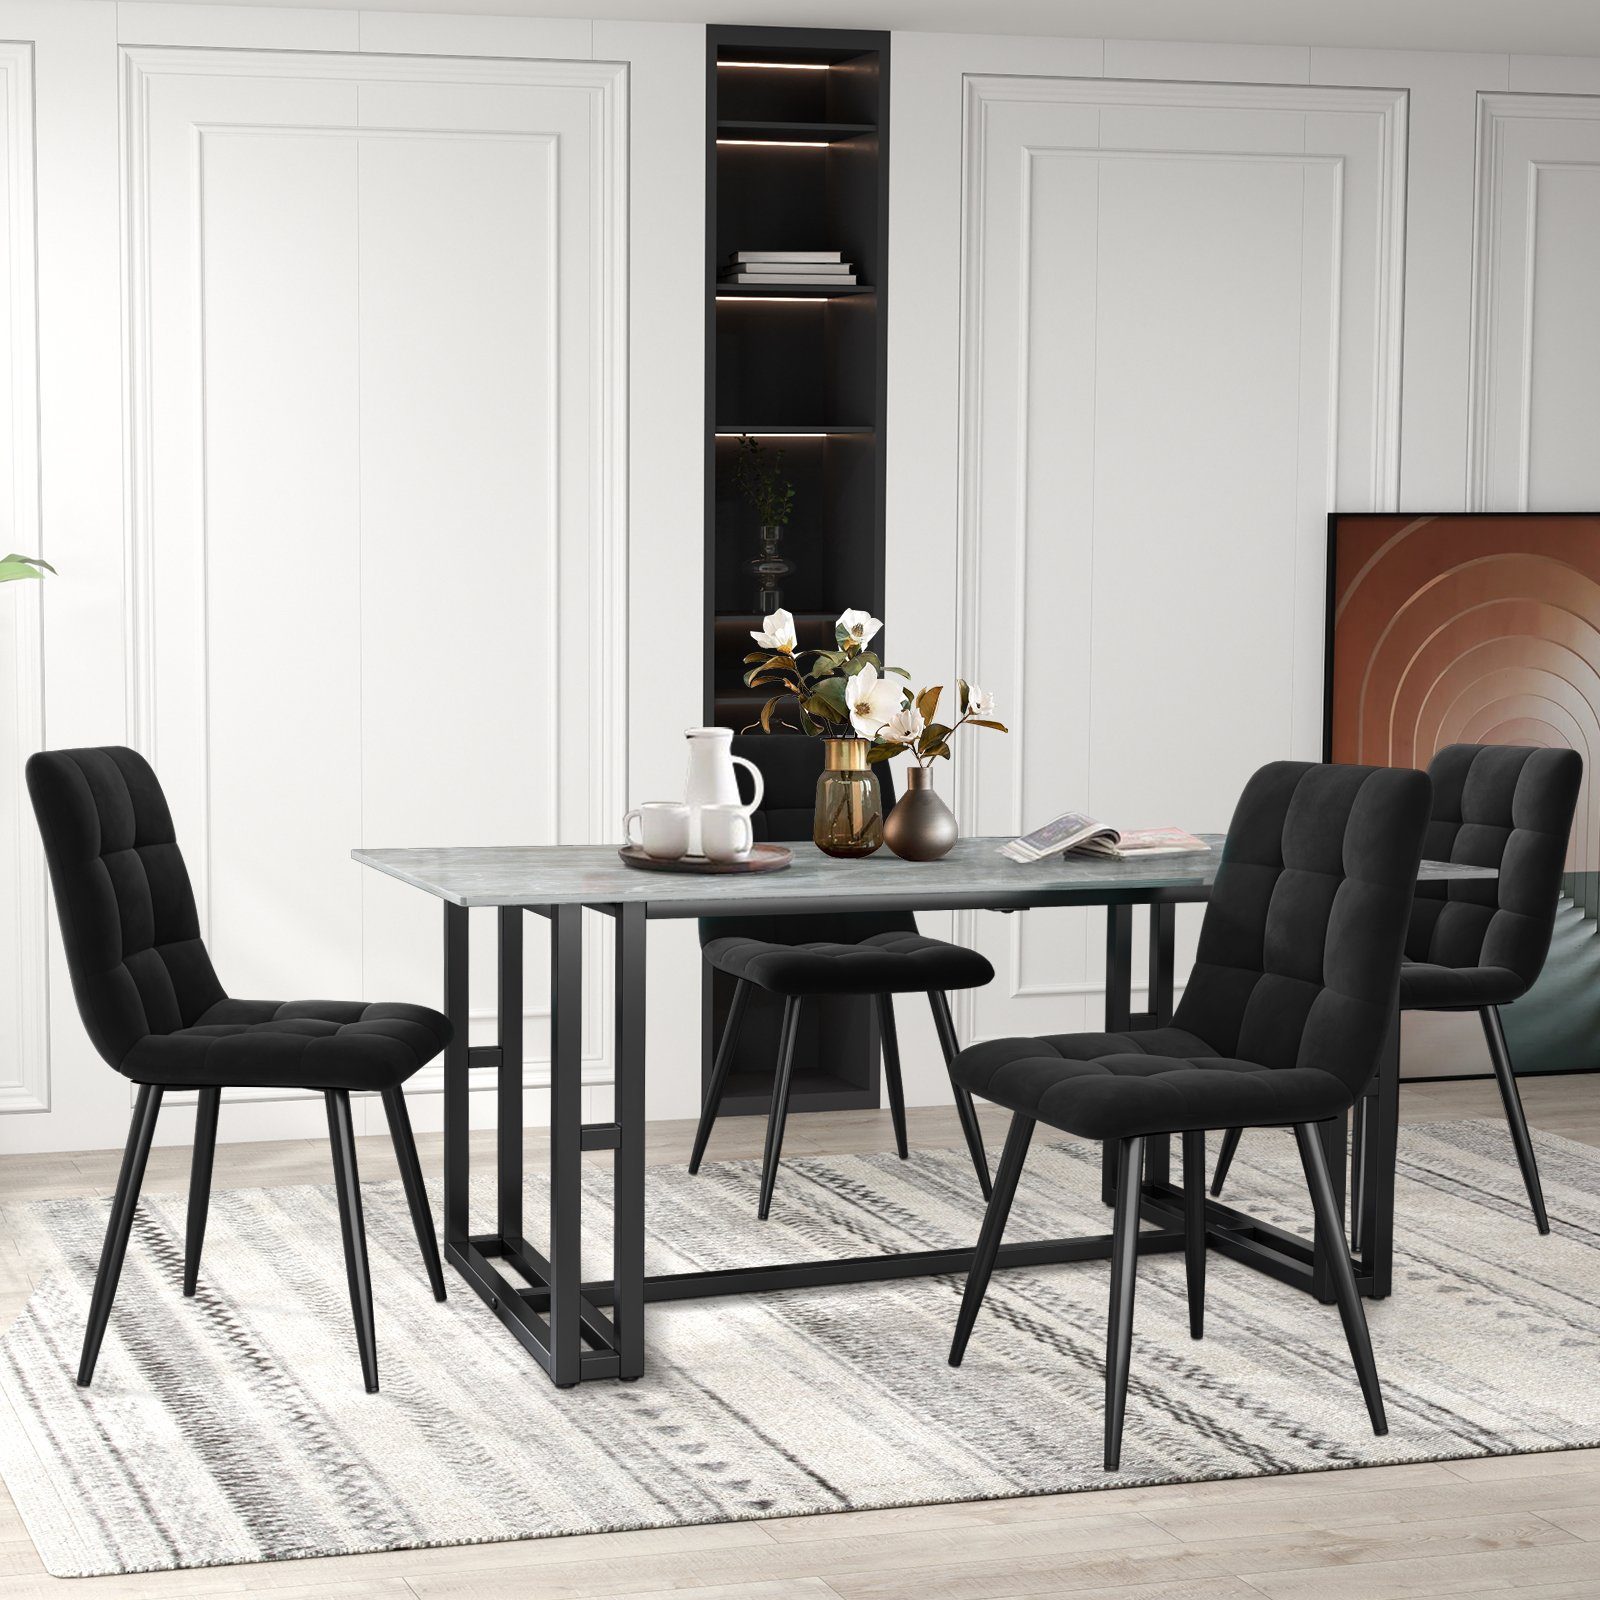 SEEZSSA Küchenstuhl Esszimmerstuhl(4 St),Polsterstuhl aus Samt Gestell für Esszimmer, Design Loungesessel Stuhl mit Rückenlehne,Sitzfläche aus Metall Schwarz